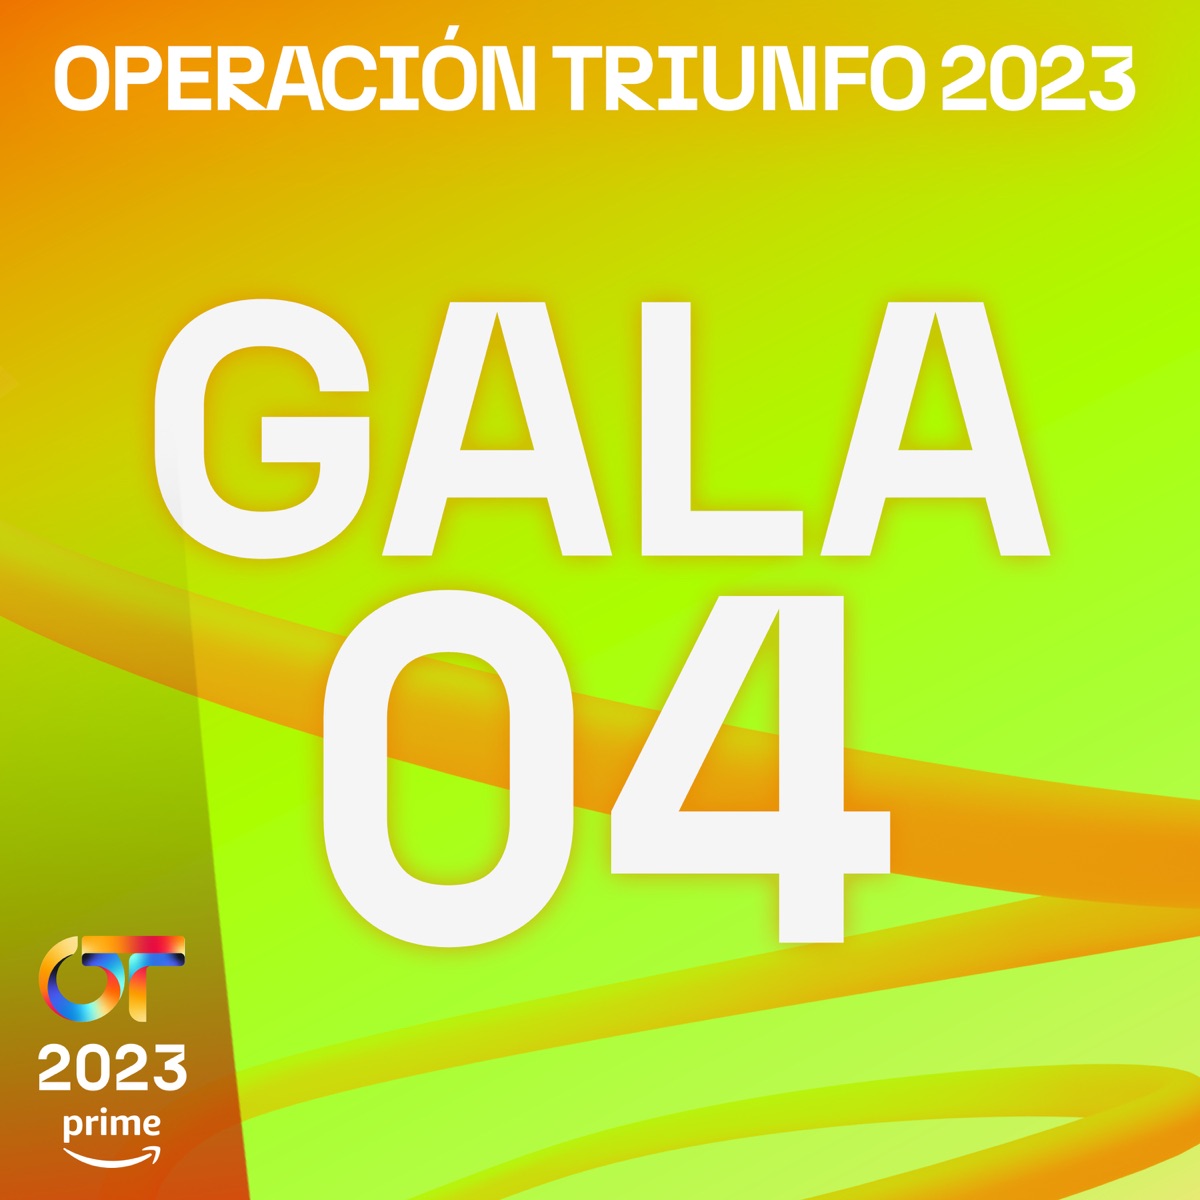 Operación Triunfo 2023 - OT Gala 7 (Operación Triunfo 2023) Lyrics